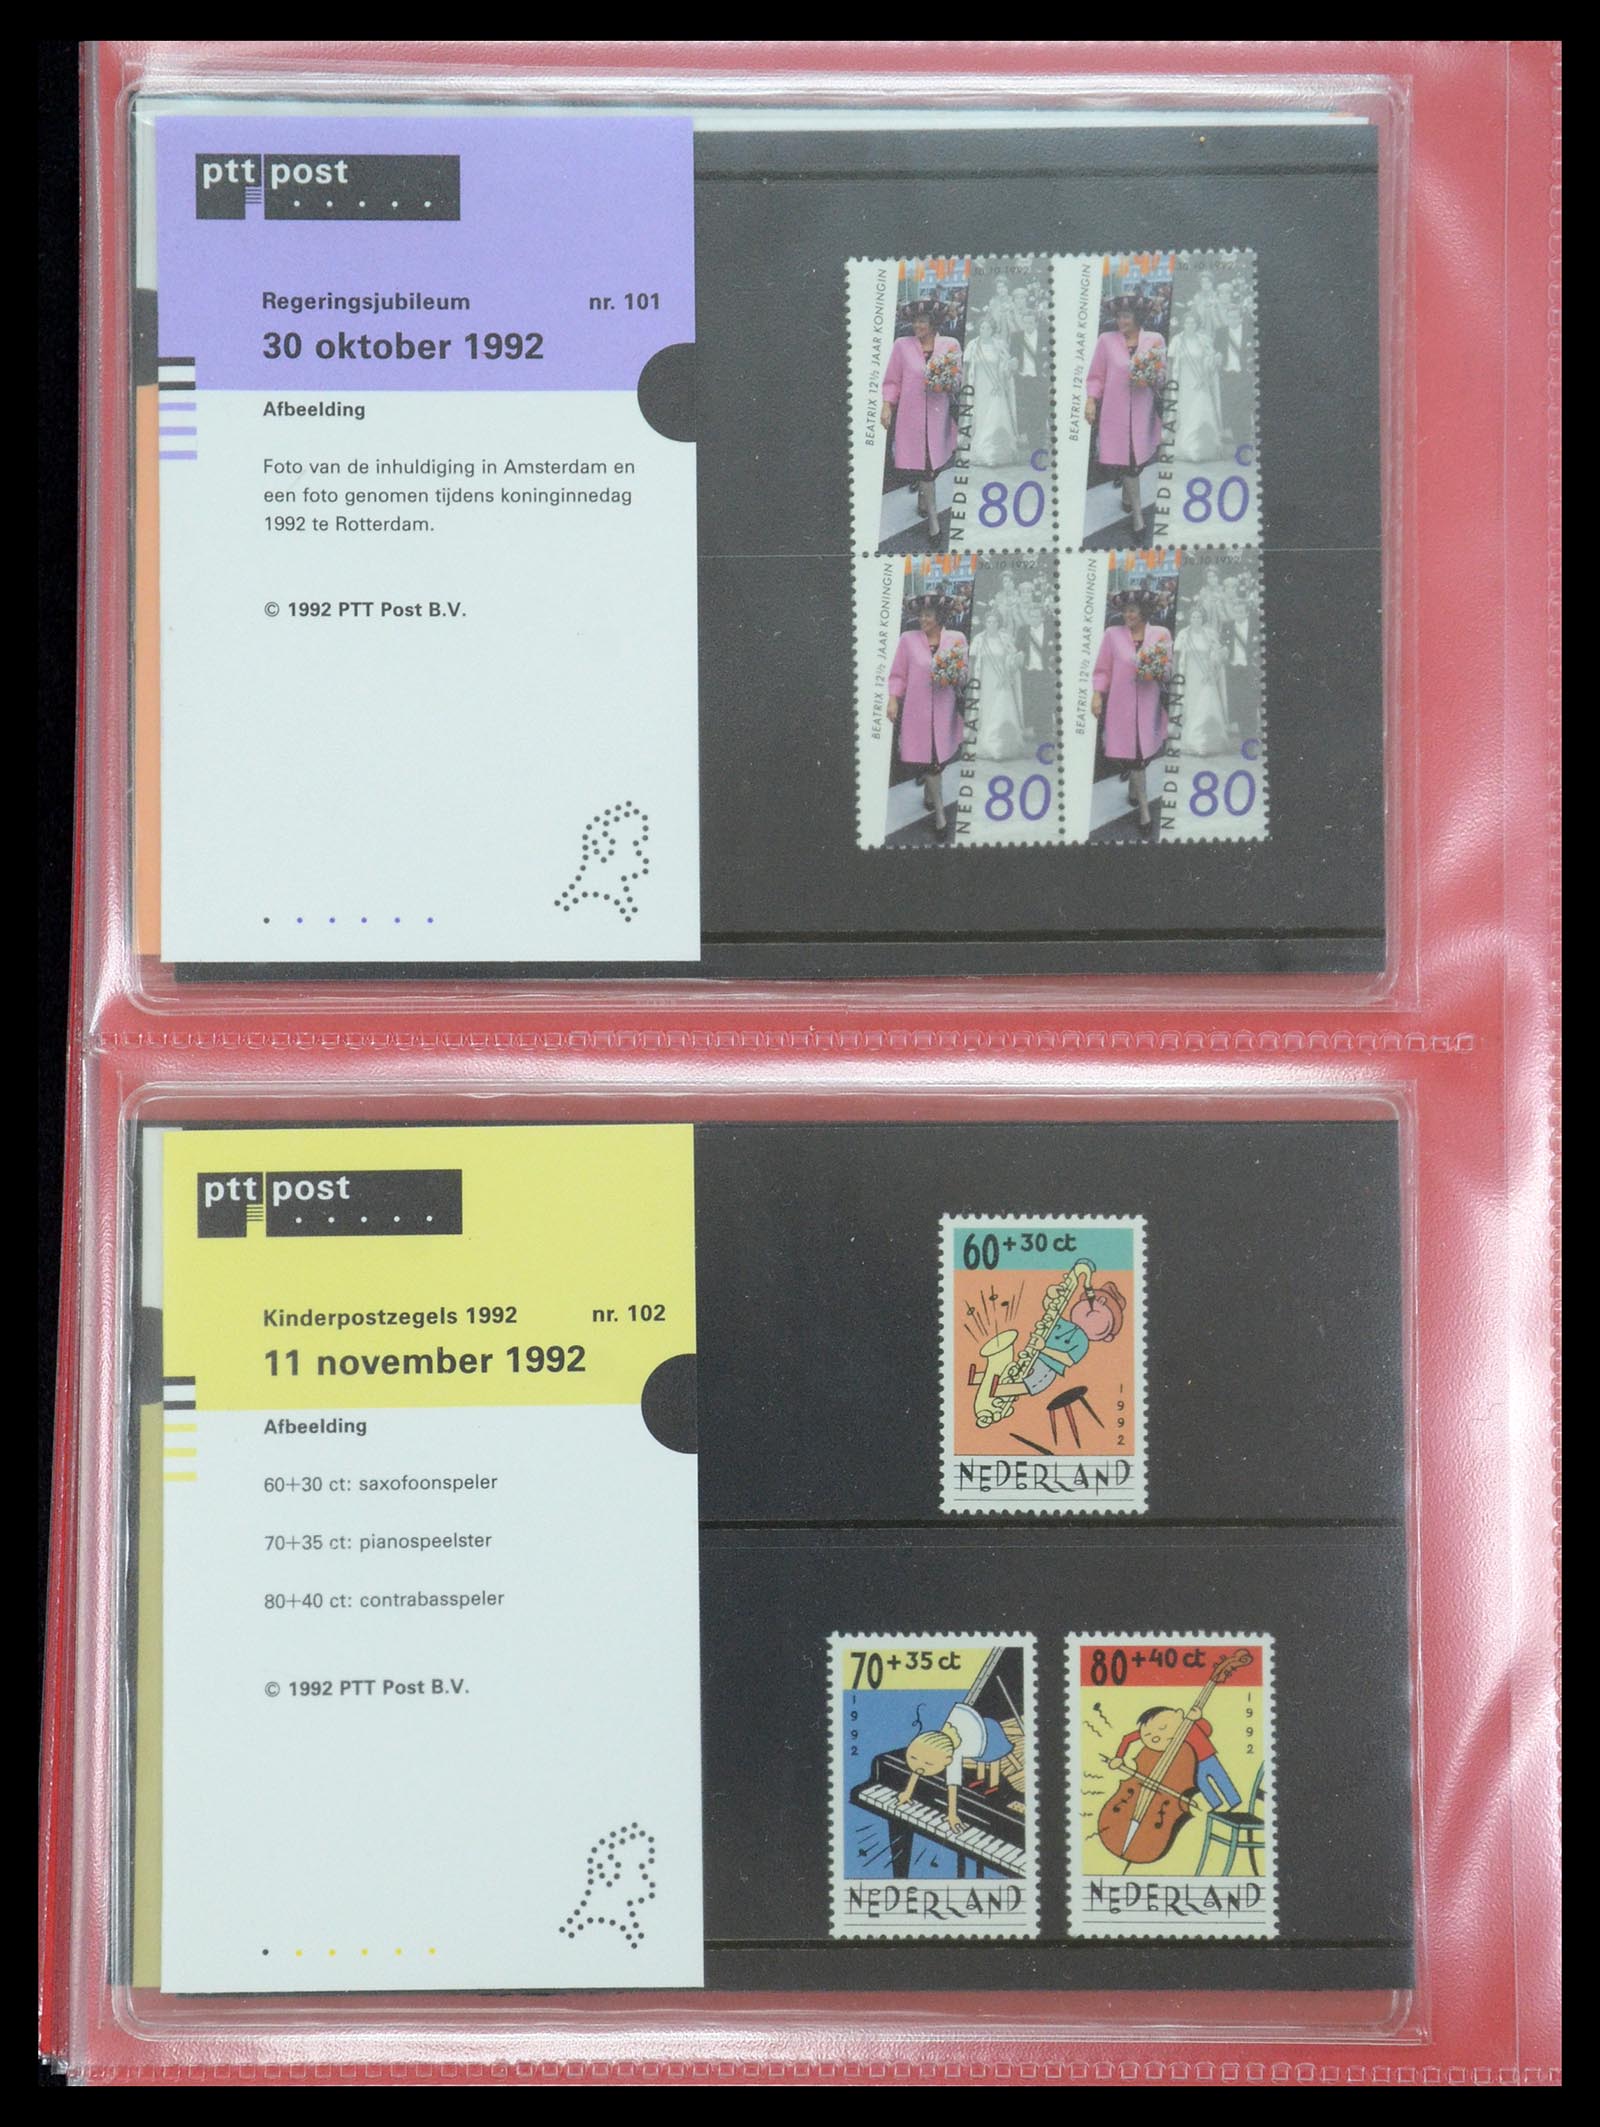 35692 052 - Stamp Collection 35692 Netherlands presentation packs 1982-2021!!